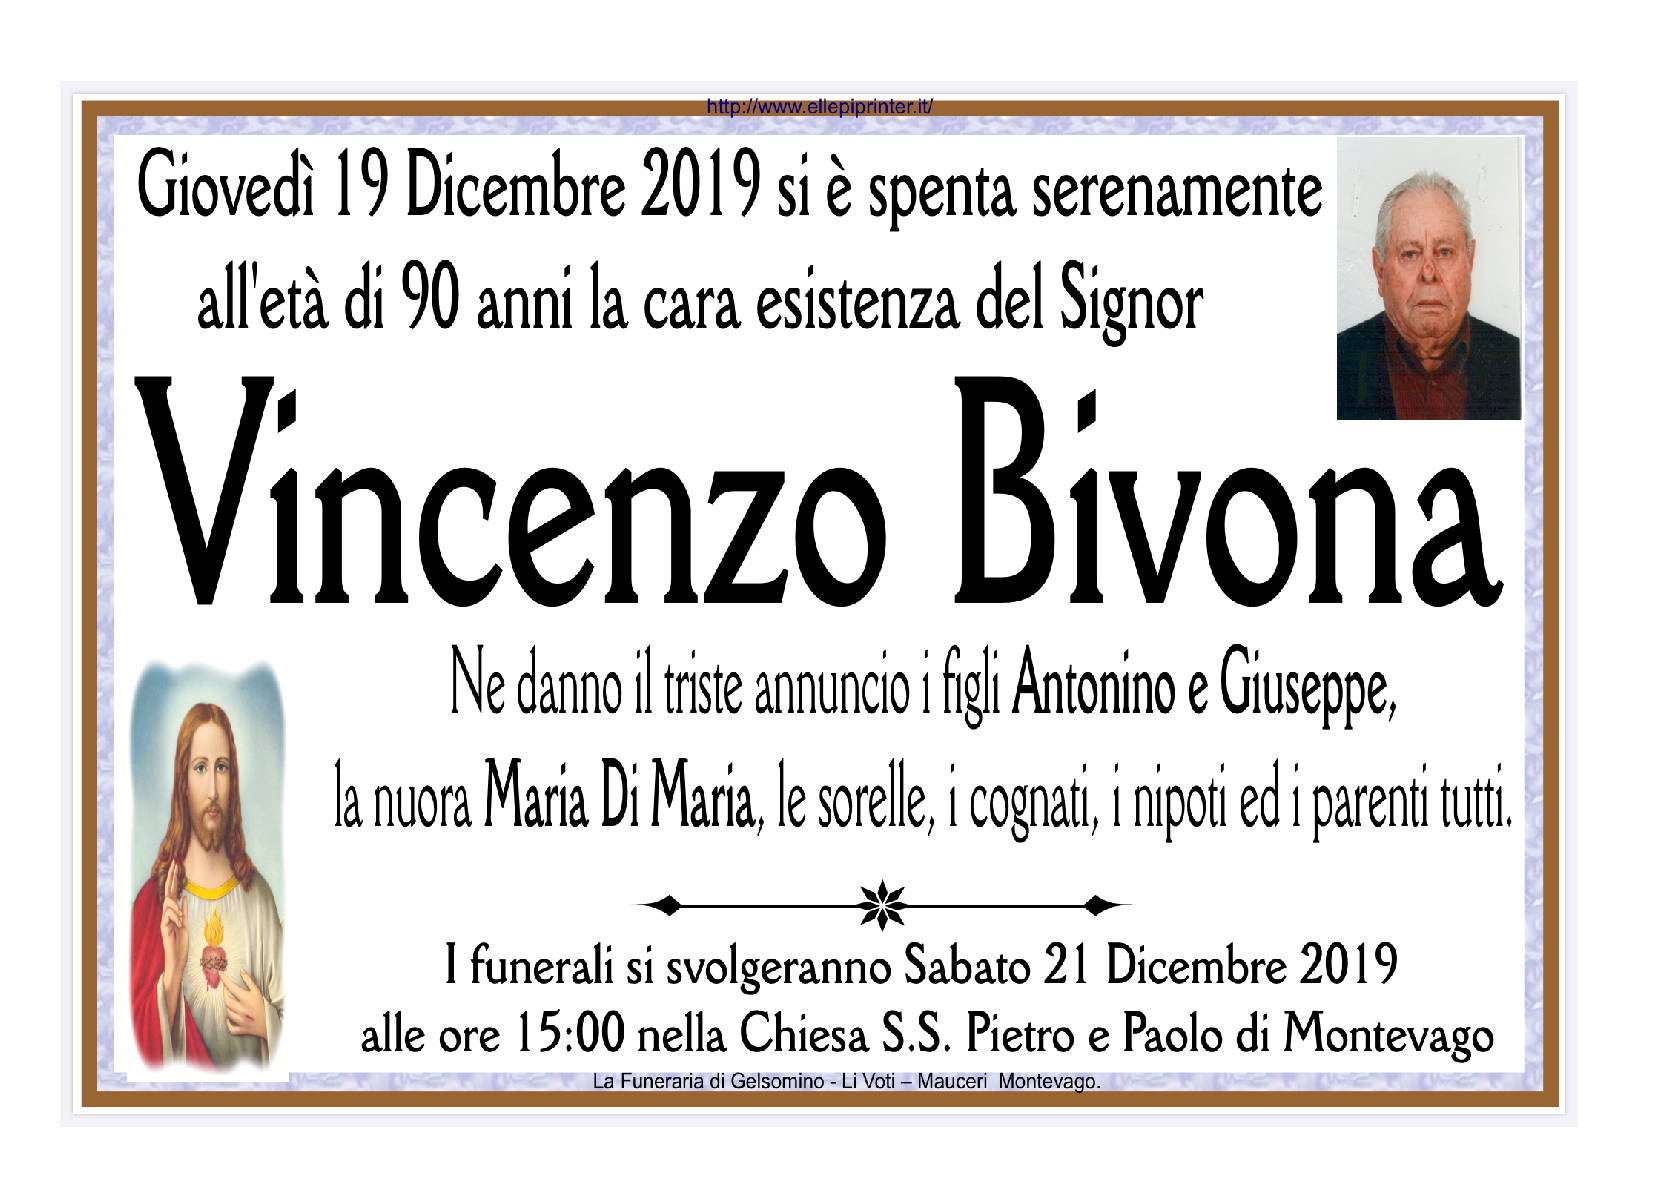 Vincenzo Bivona